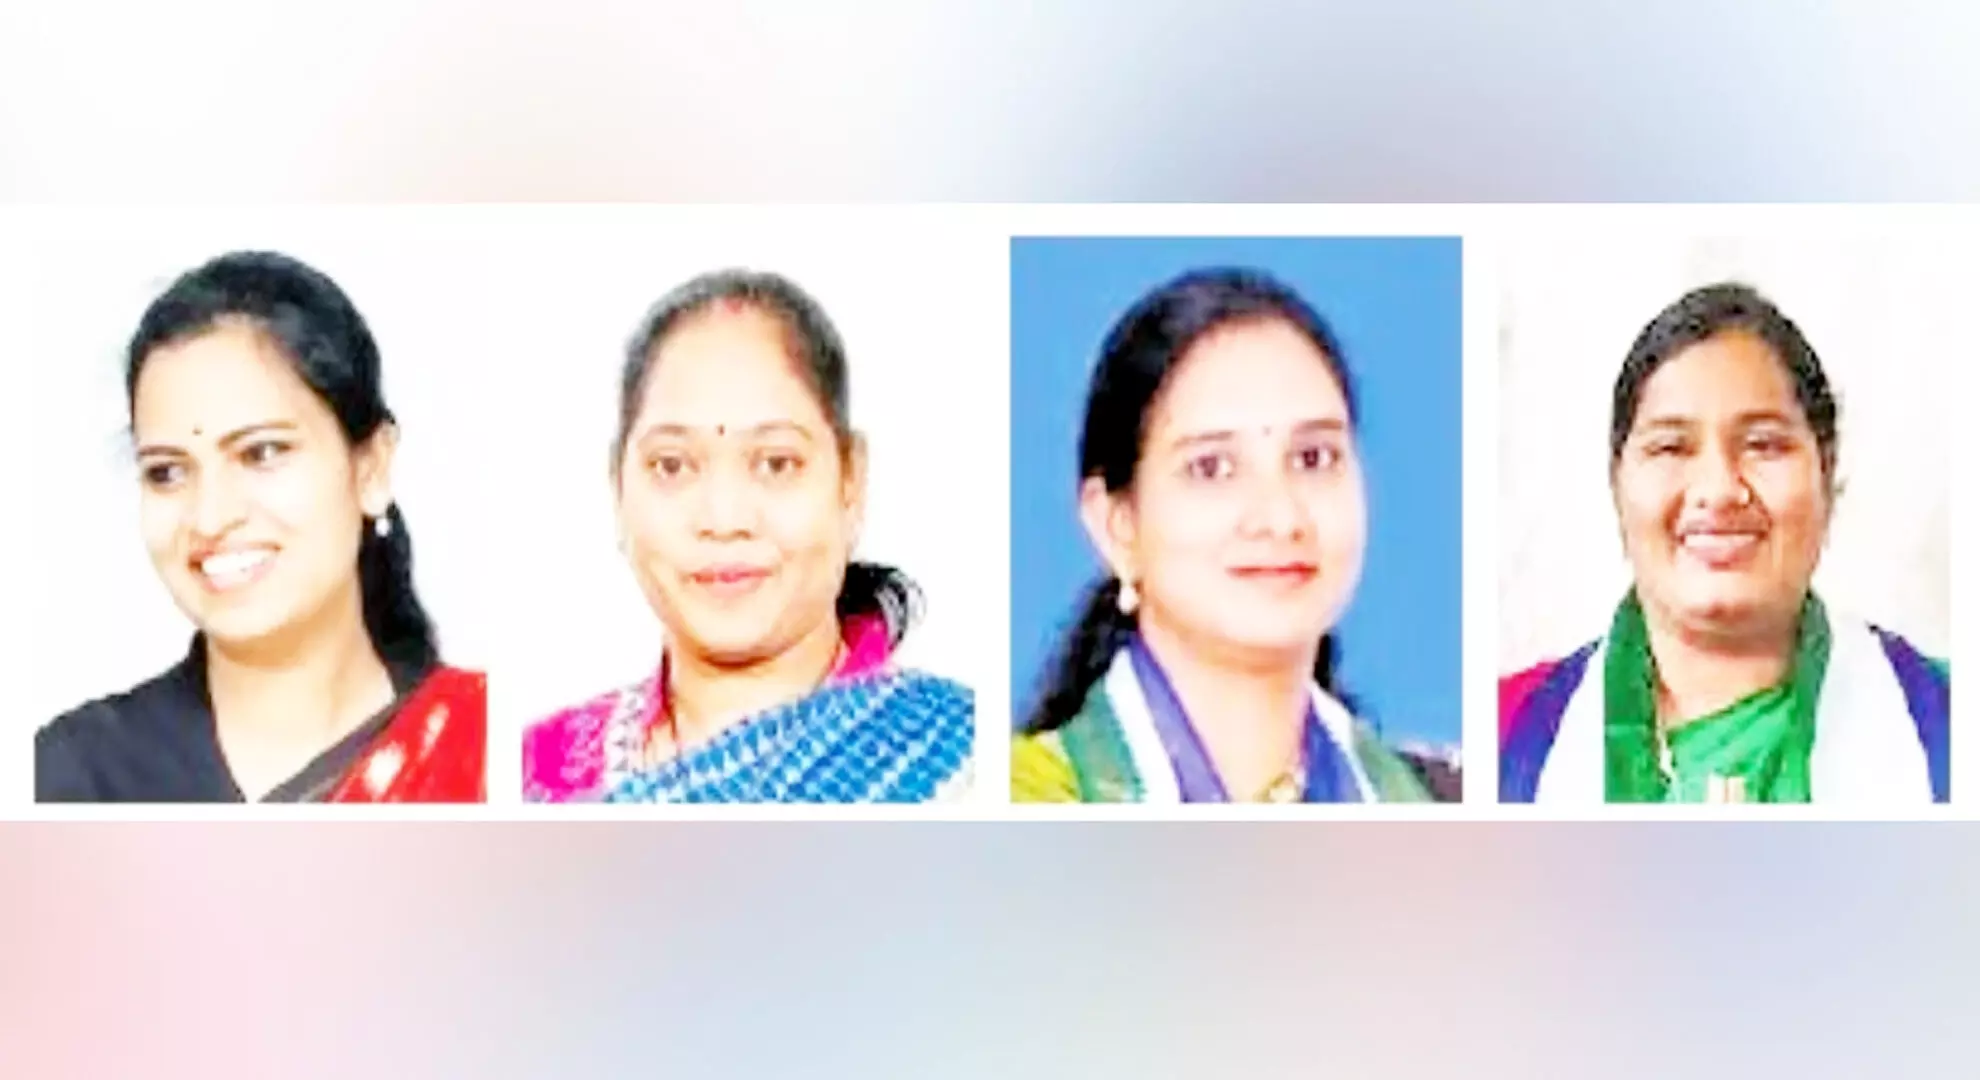 वाईएसआरसी ने गुंटूर के सात में से चार क्षेत्रों में महिलाओं को टिकट दिया है